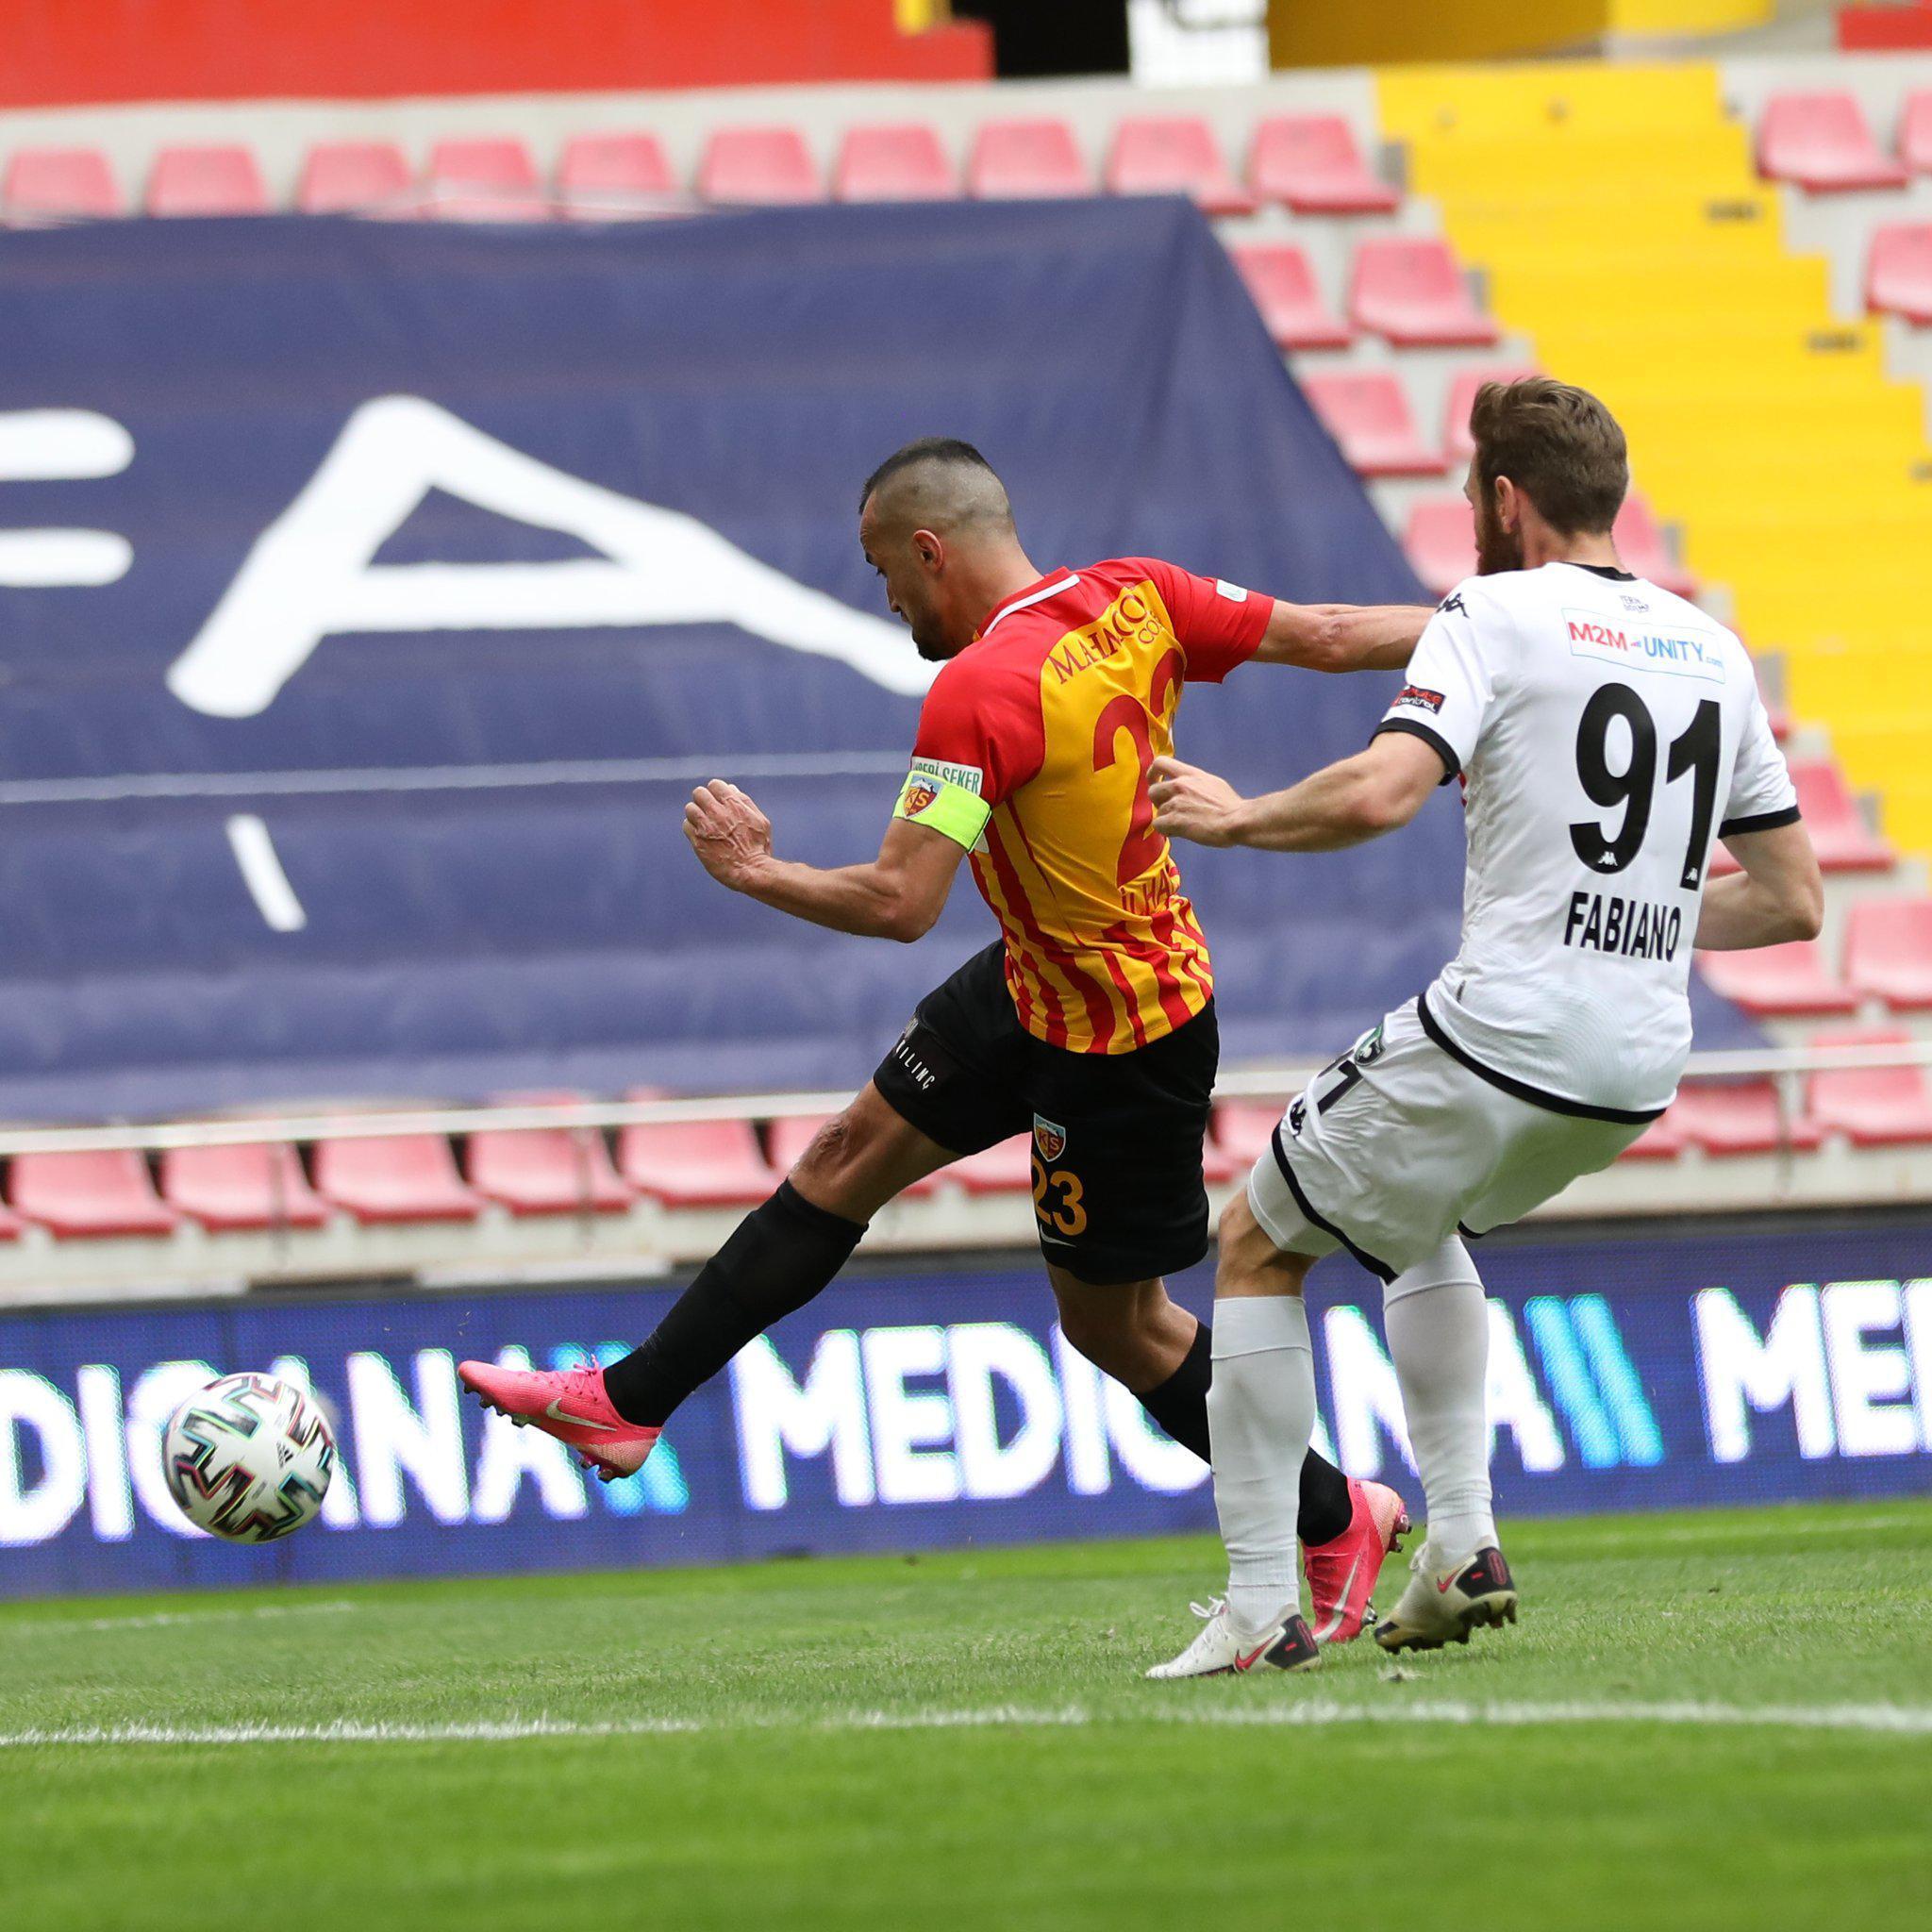 ÖZET | Kayserispor - Denizlispor maç sonucu: 6-3